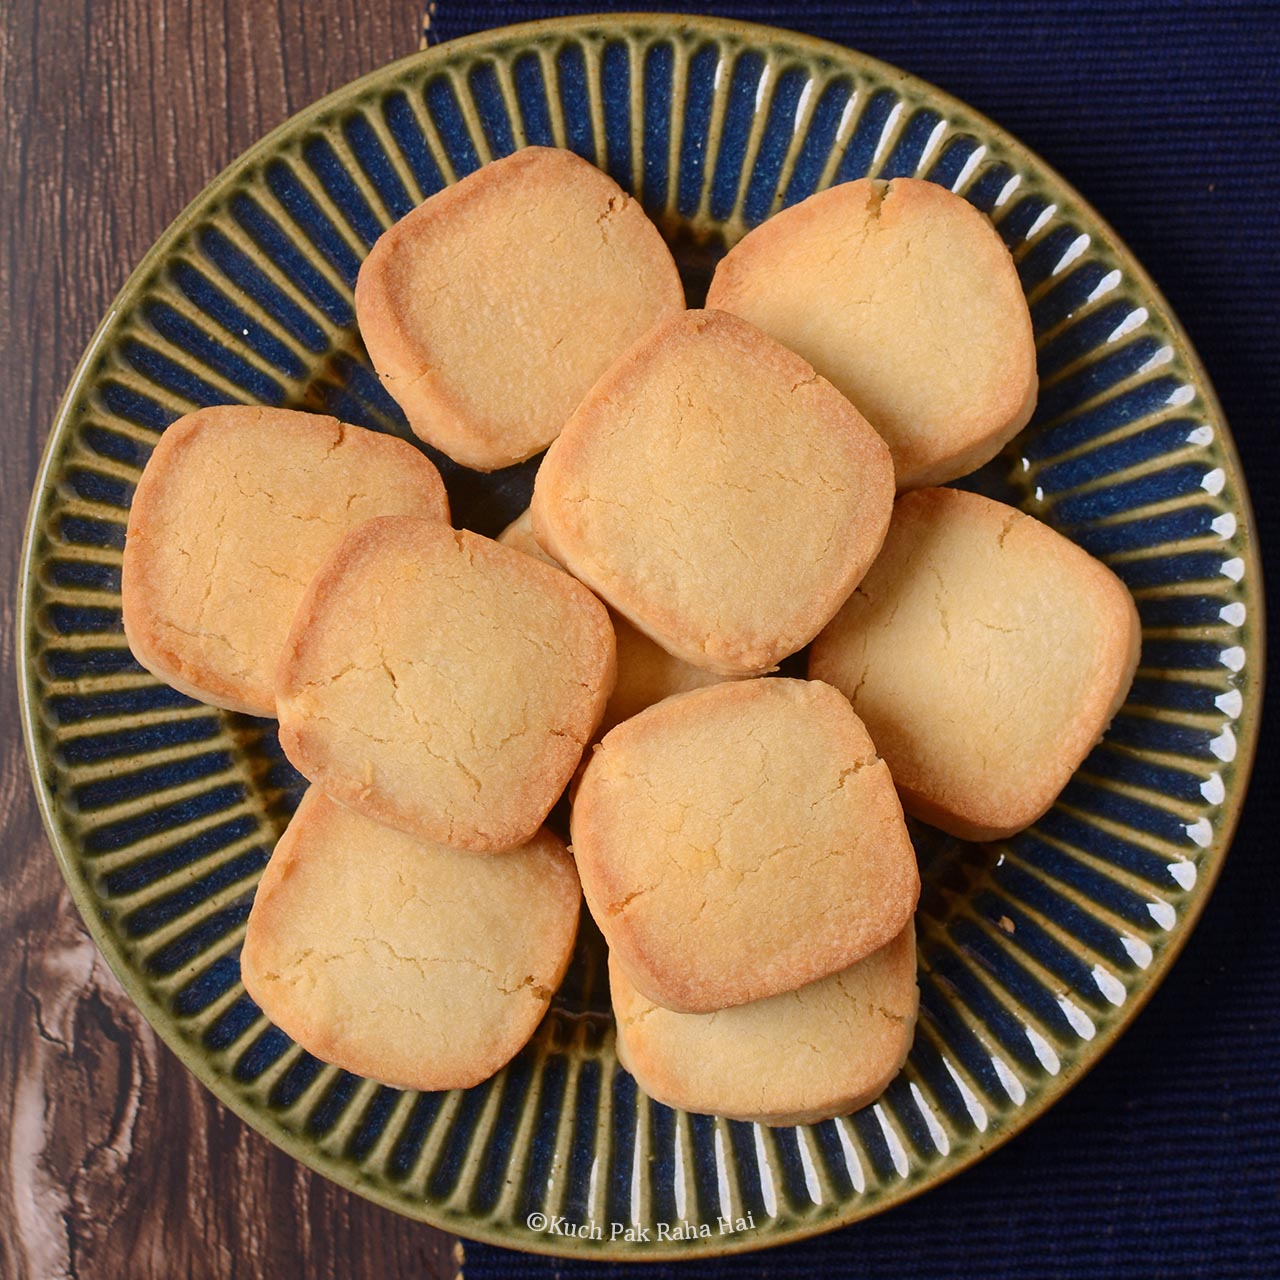 Shortbread cookies baked in air fryer.